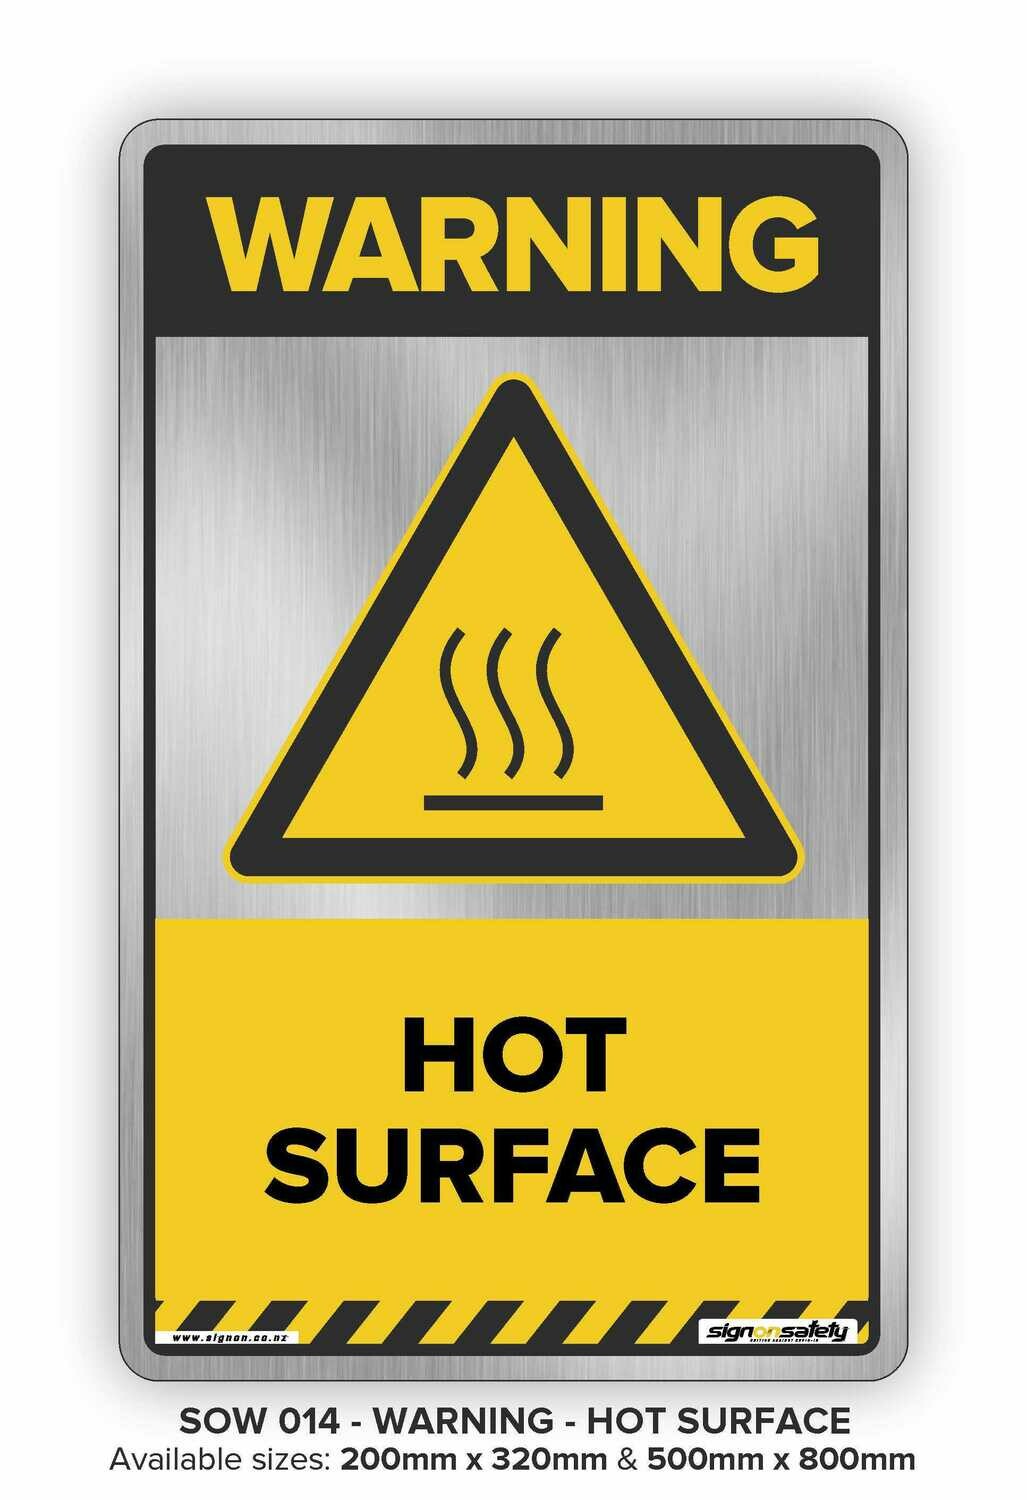 Warning - Hot Surface